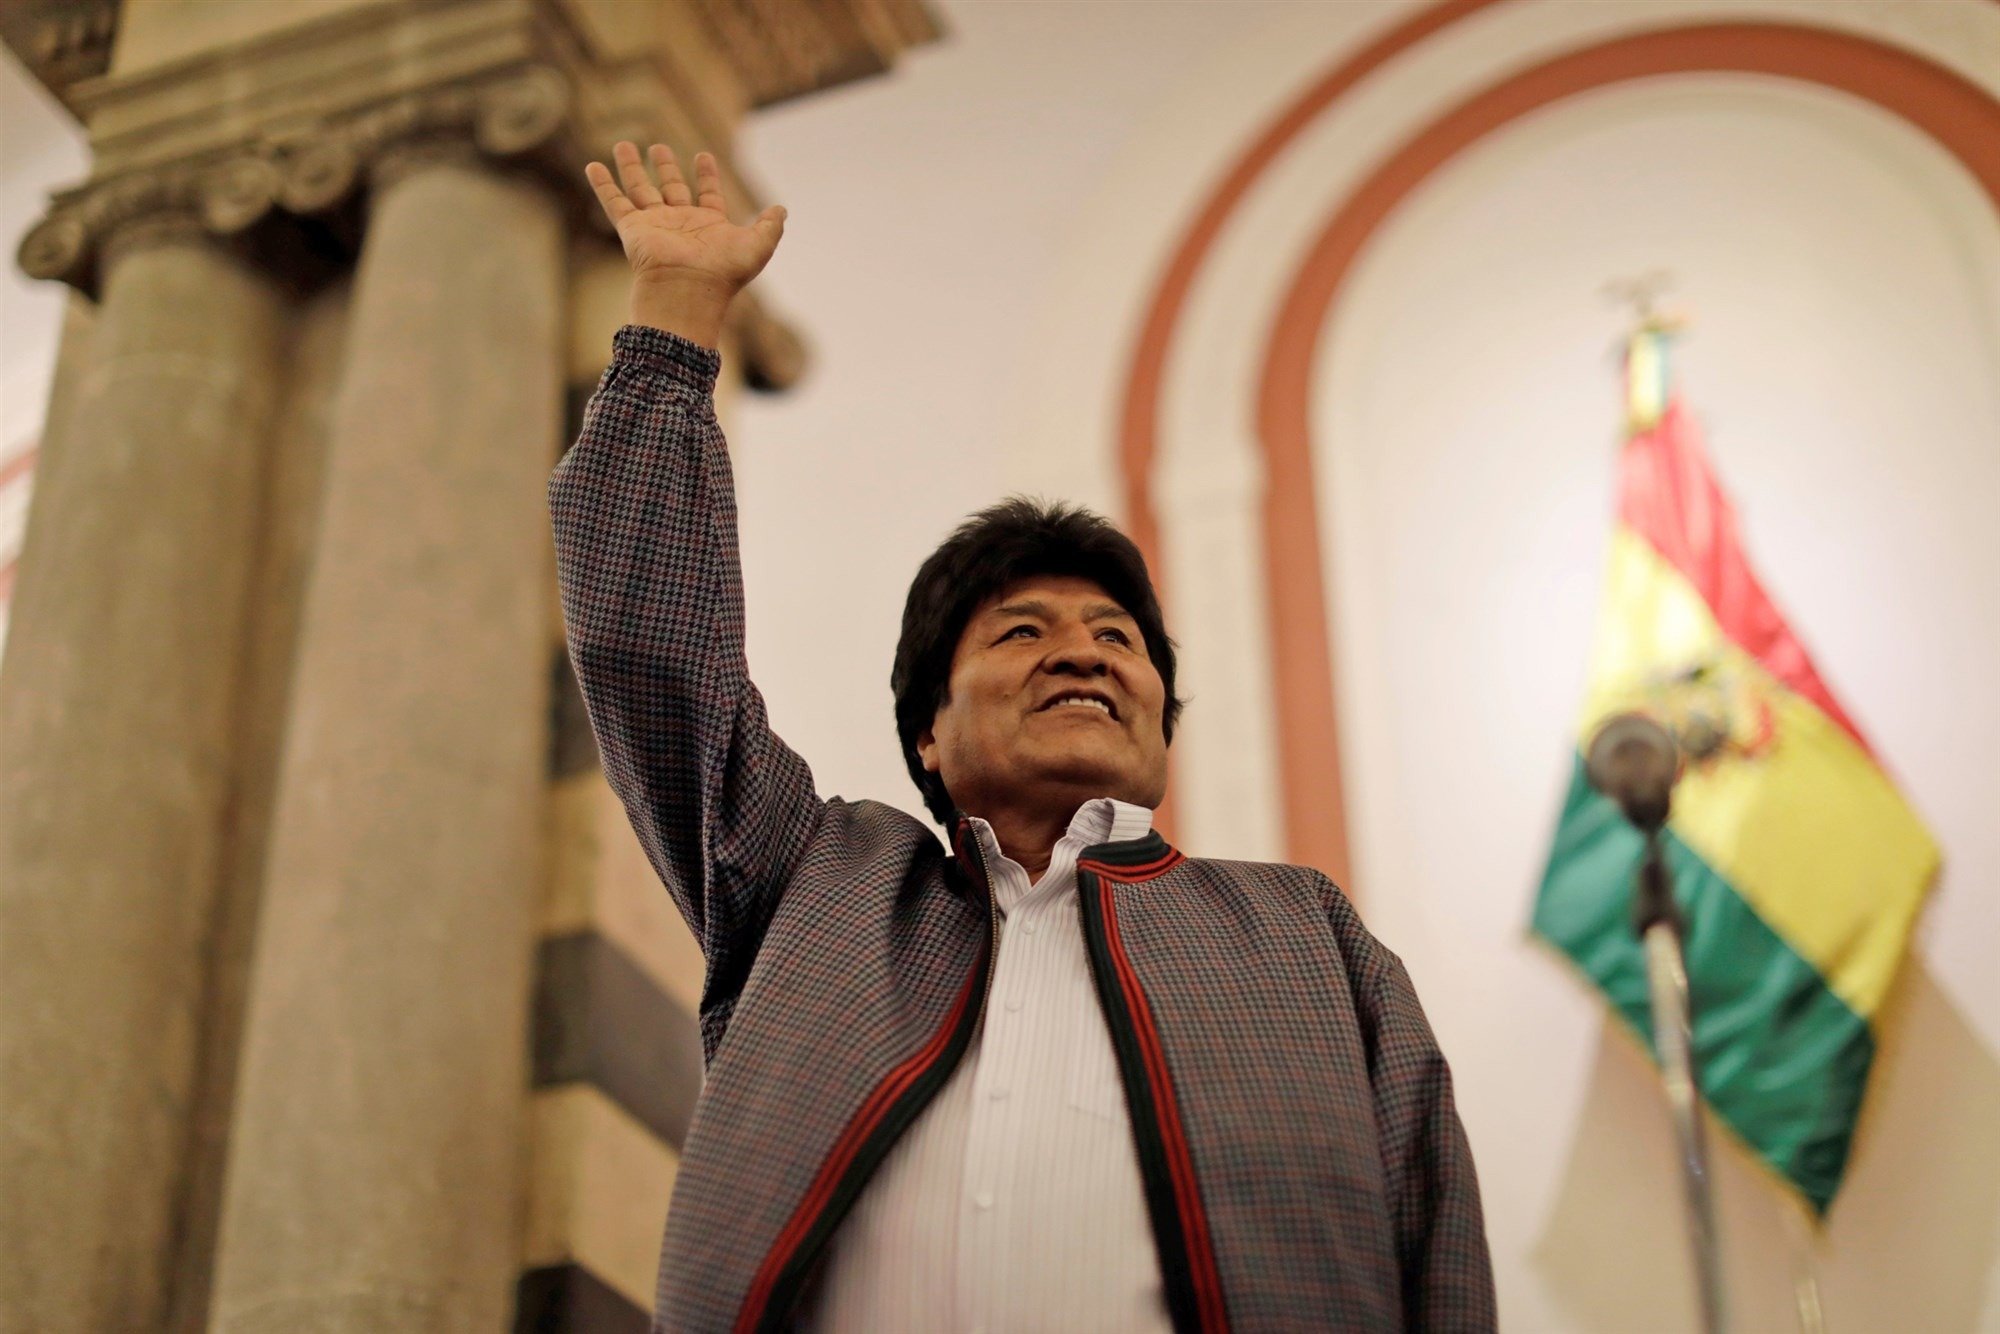 Resultado de imagem para Evo Morales conquistou nas urnas seu quarto mandato, mas não reconhecido pelos outros países que alegam fraude."